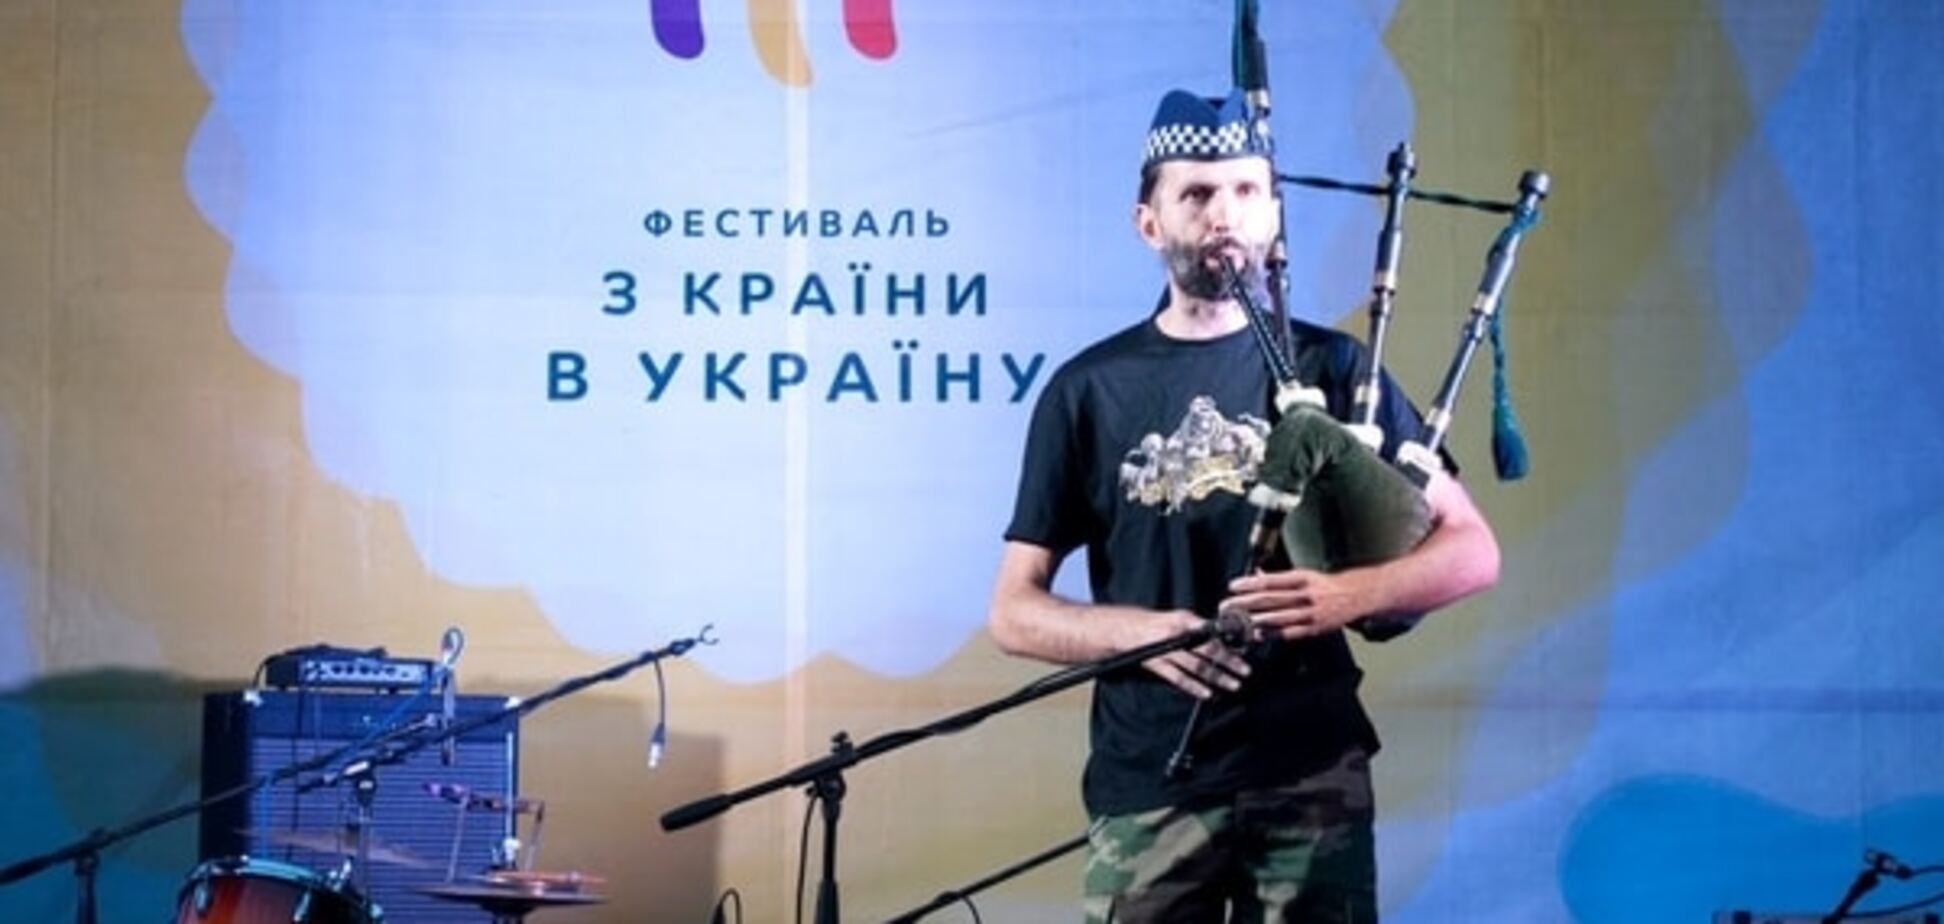 Фестиваль 'З країни в Україну' - справжнє свято для патріотів